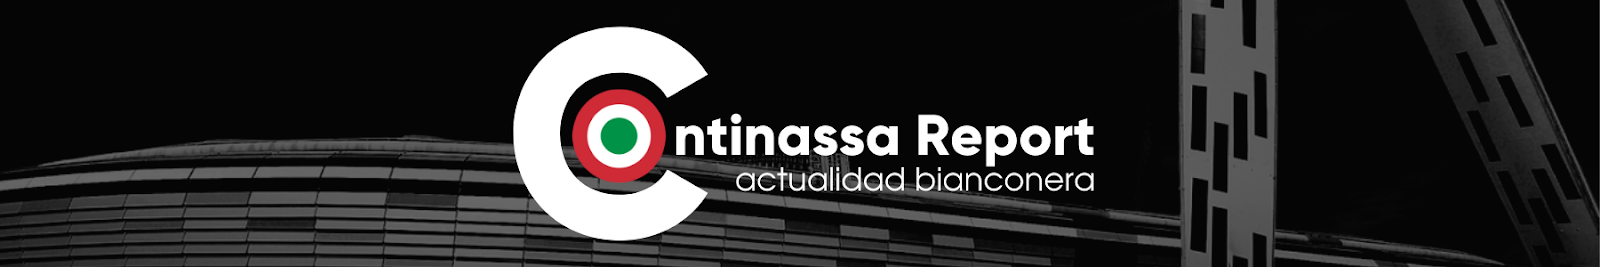 Continassa Report - Actualidad Bianconera